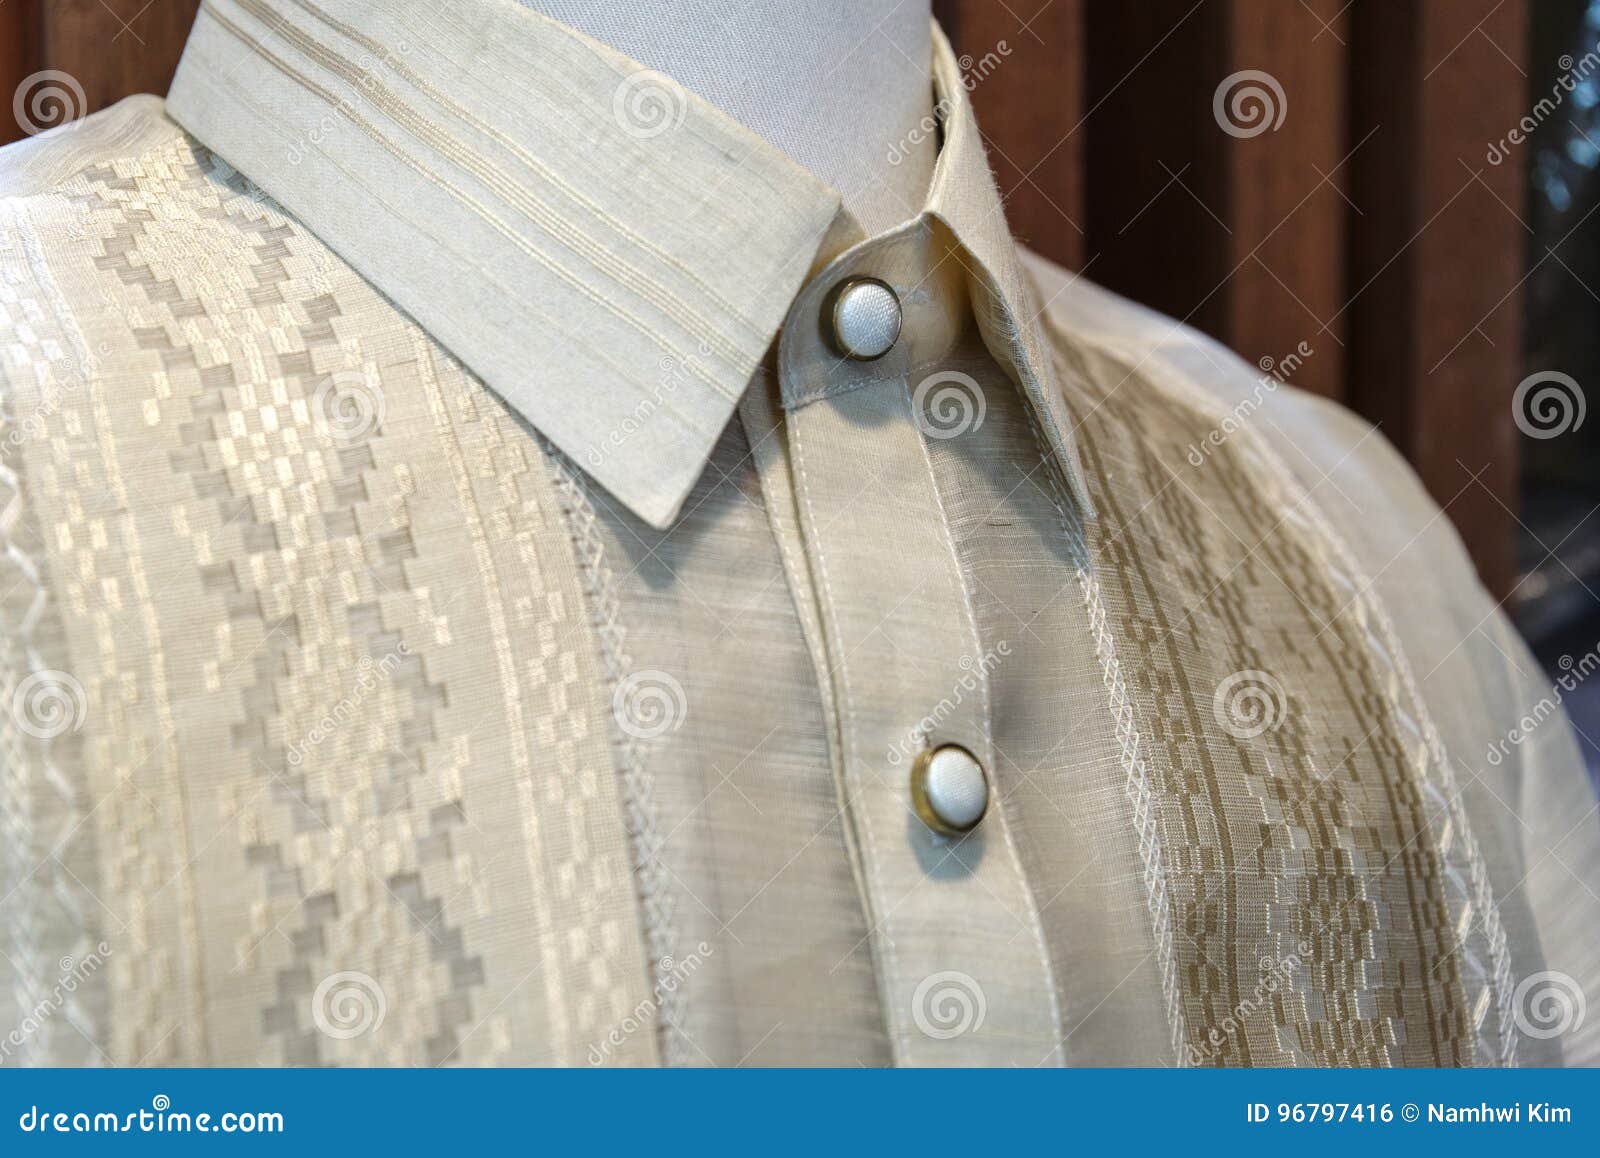 formal shirt and national dress barong tagalog